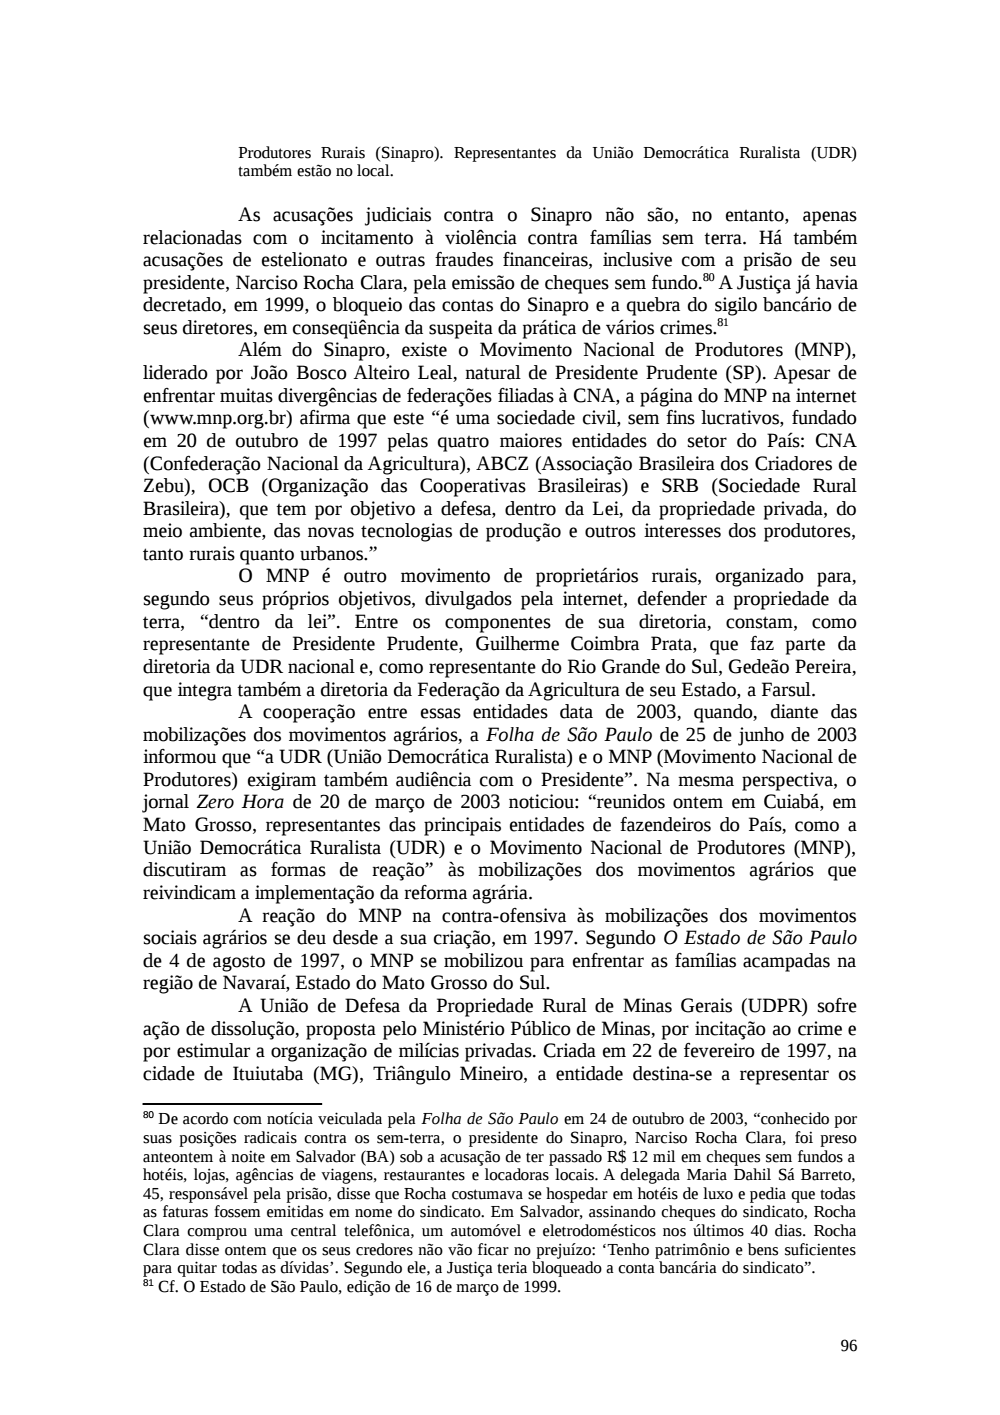 Page 96 from Relatório final da comissão